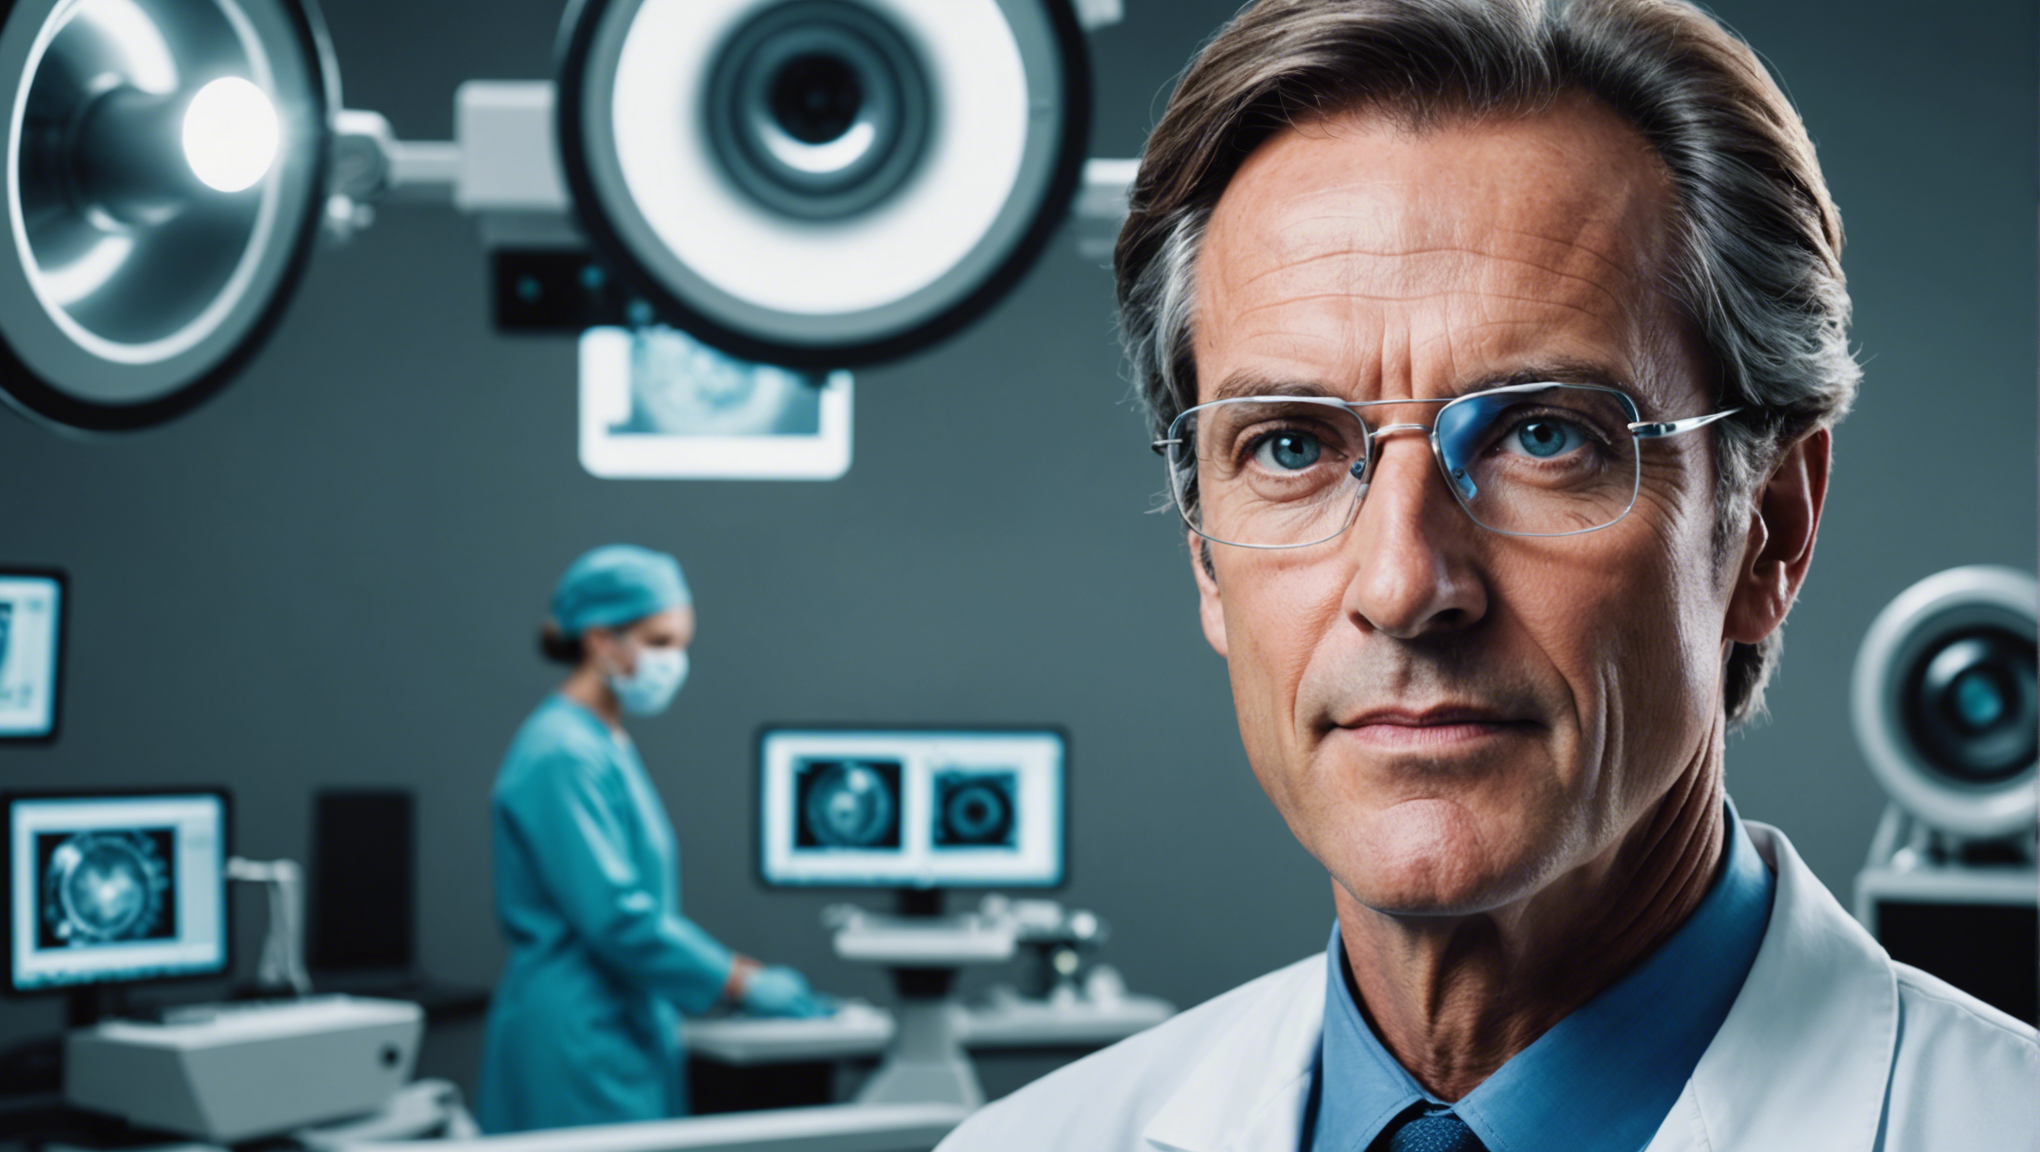 découvrez comment le dr jean-claude mary révolutionne la chirurgie de la cataracte avec ses techniques innovantes et son expertise médicale.